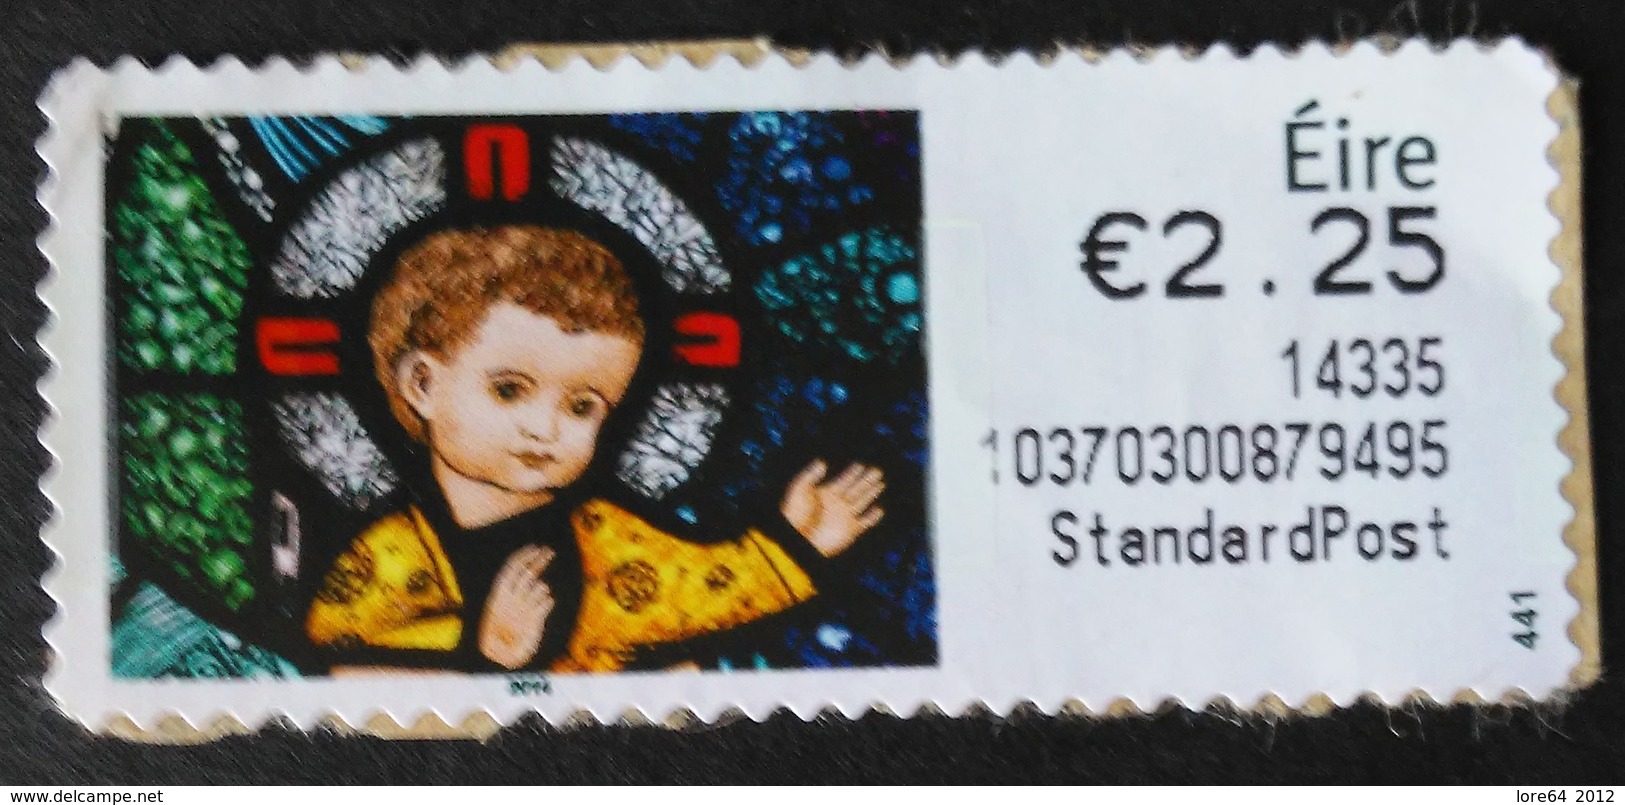 IRLANDA ATM 2014 - Vignettes D'affranchissement (Frama)